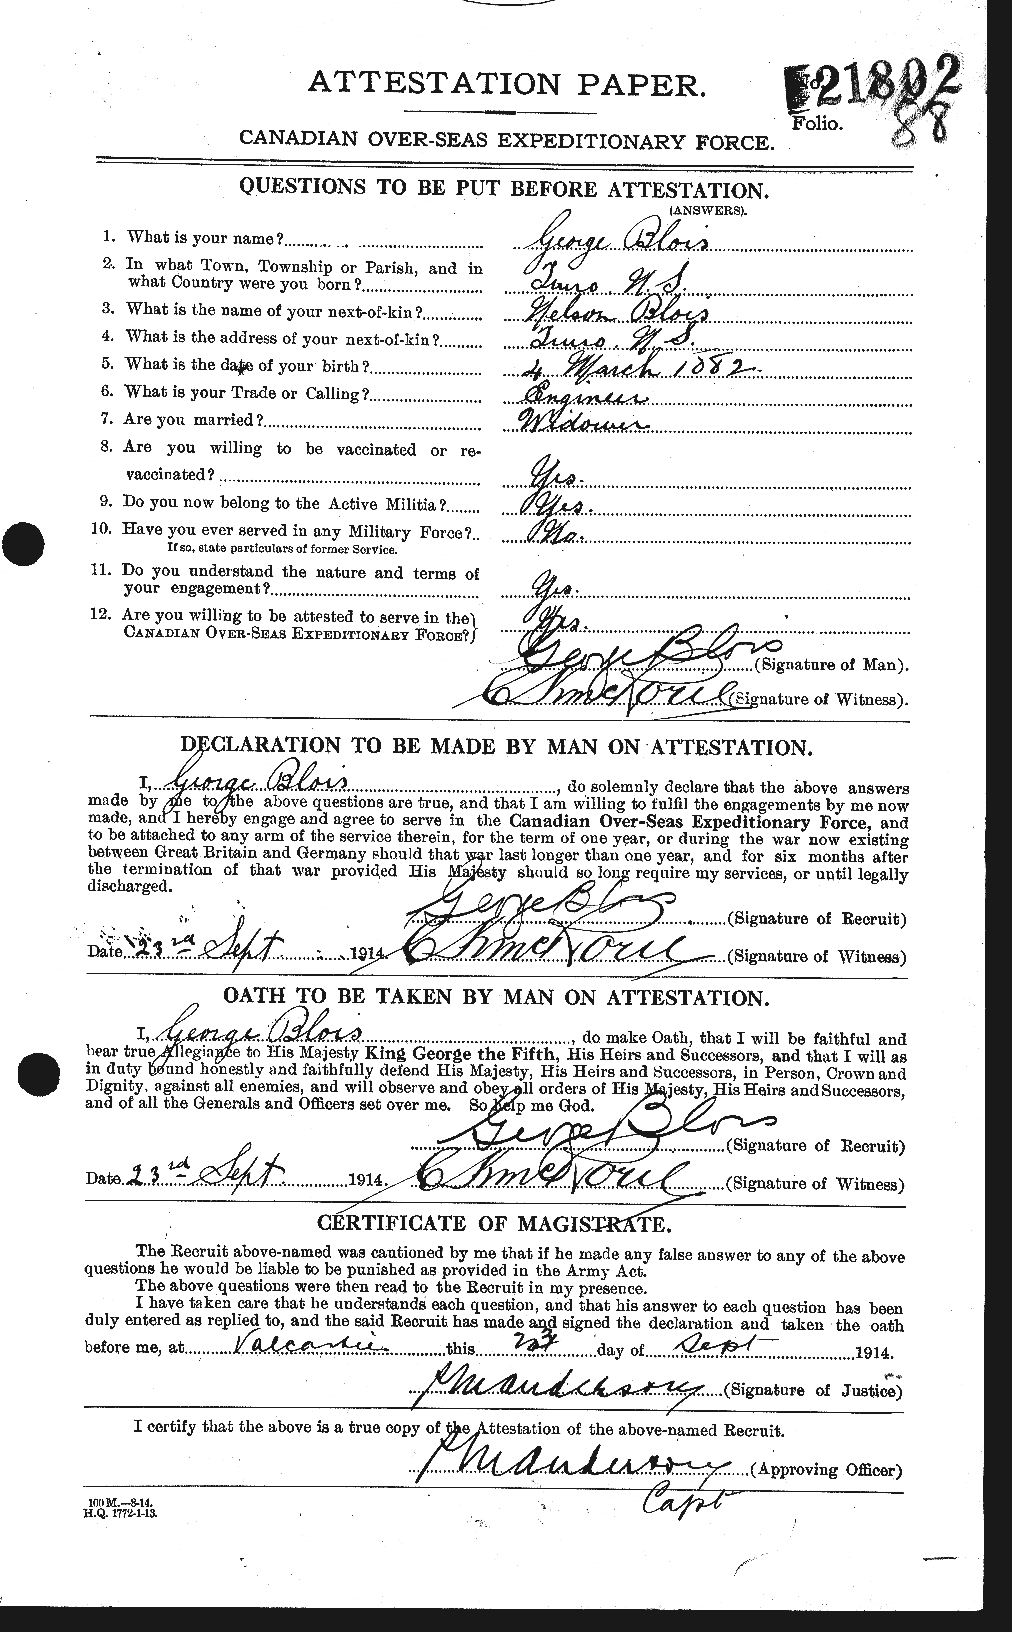 Dossiers du Personnel de la Première Guerre mondiale - CEC 248449a